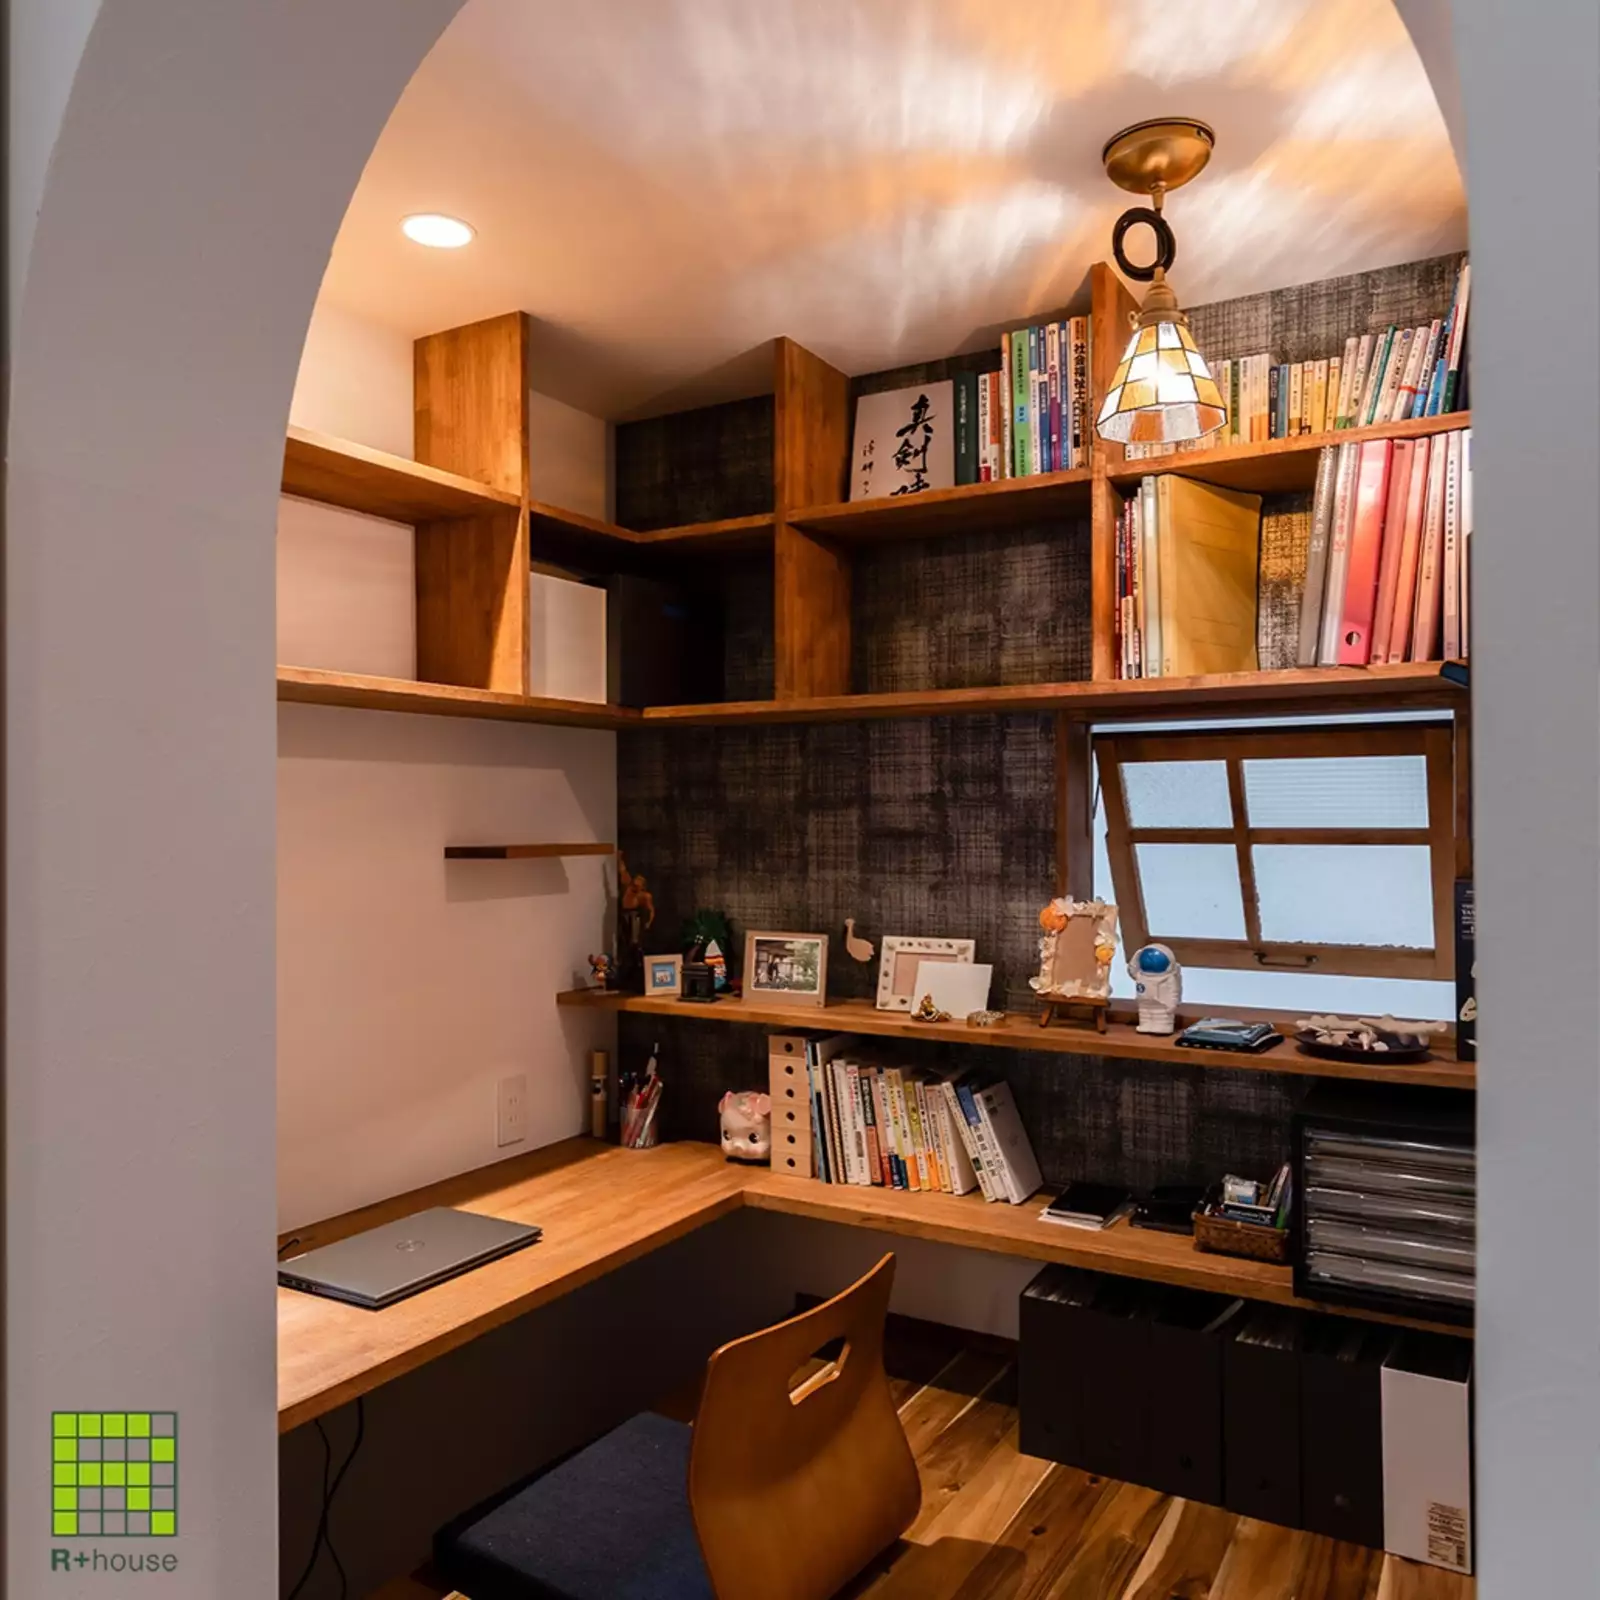 R+houseの物件の書斎の写真です。小さめのかわいい入口越しに、二畳のレトロな雰囲気の書斎。明り取り窓もあるので明るく風通しの良い空間。